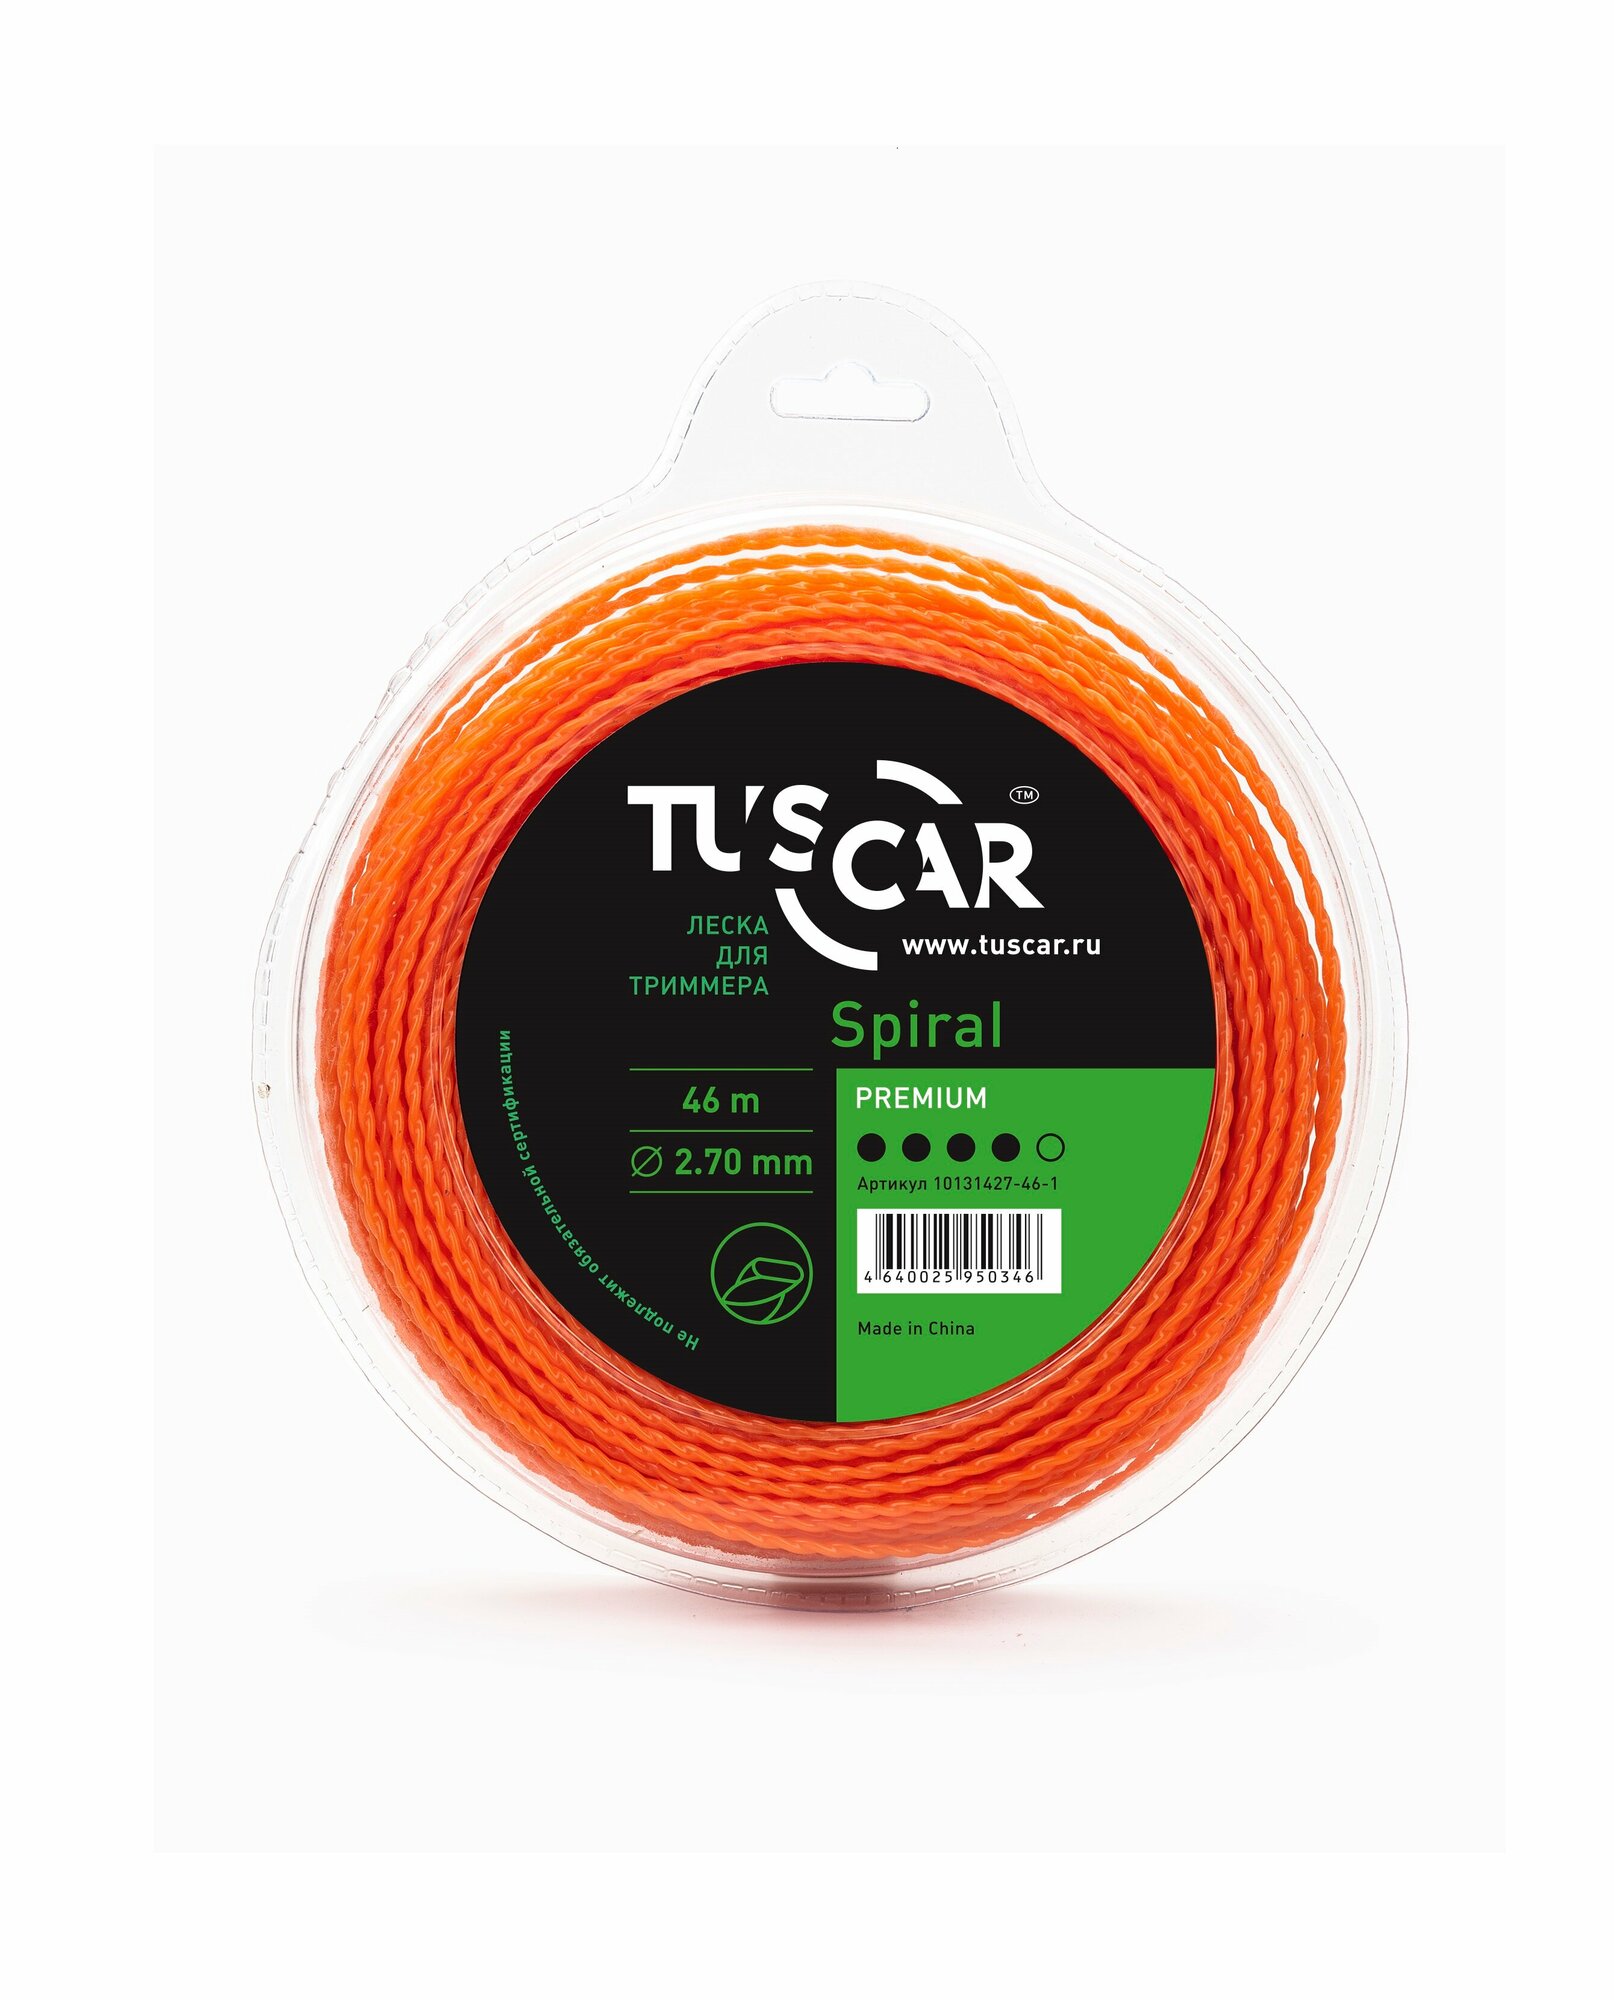 Леска для триммера TUSCAR Spiral Premium, 2.70мм* 46м